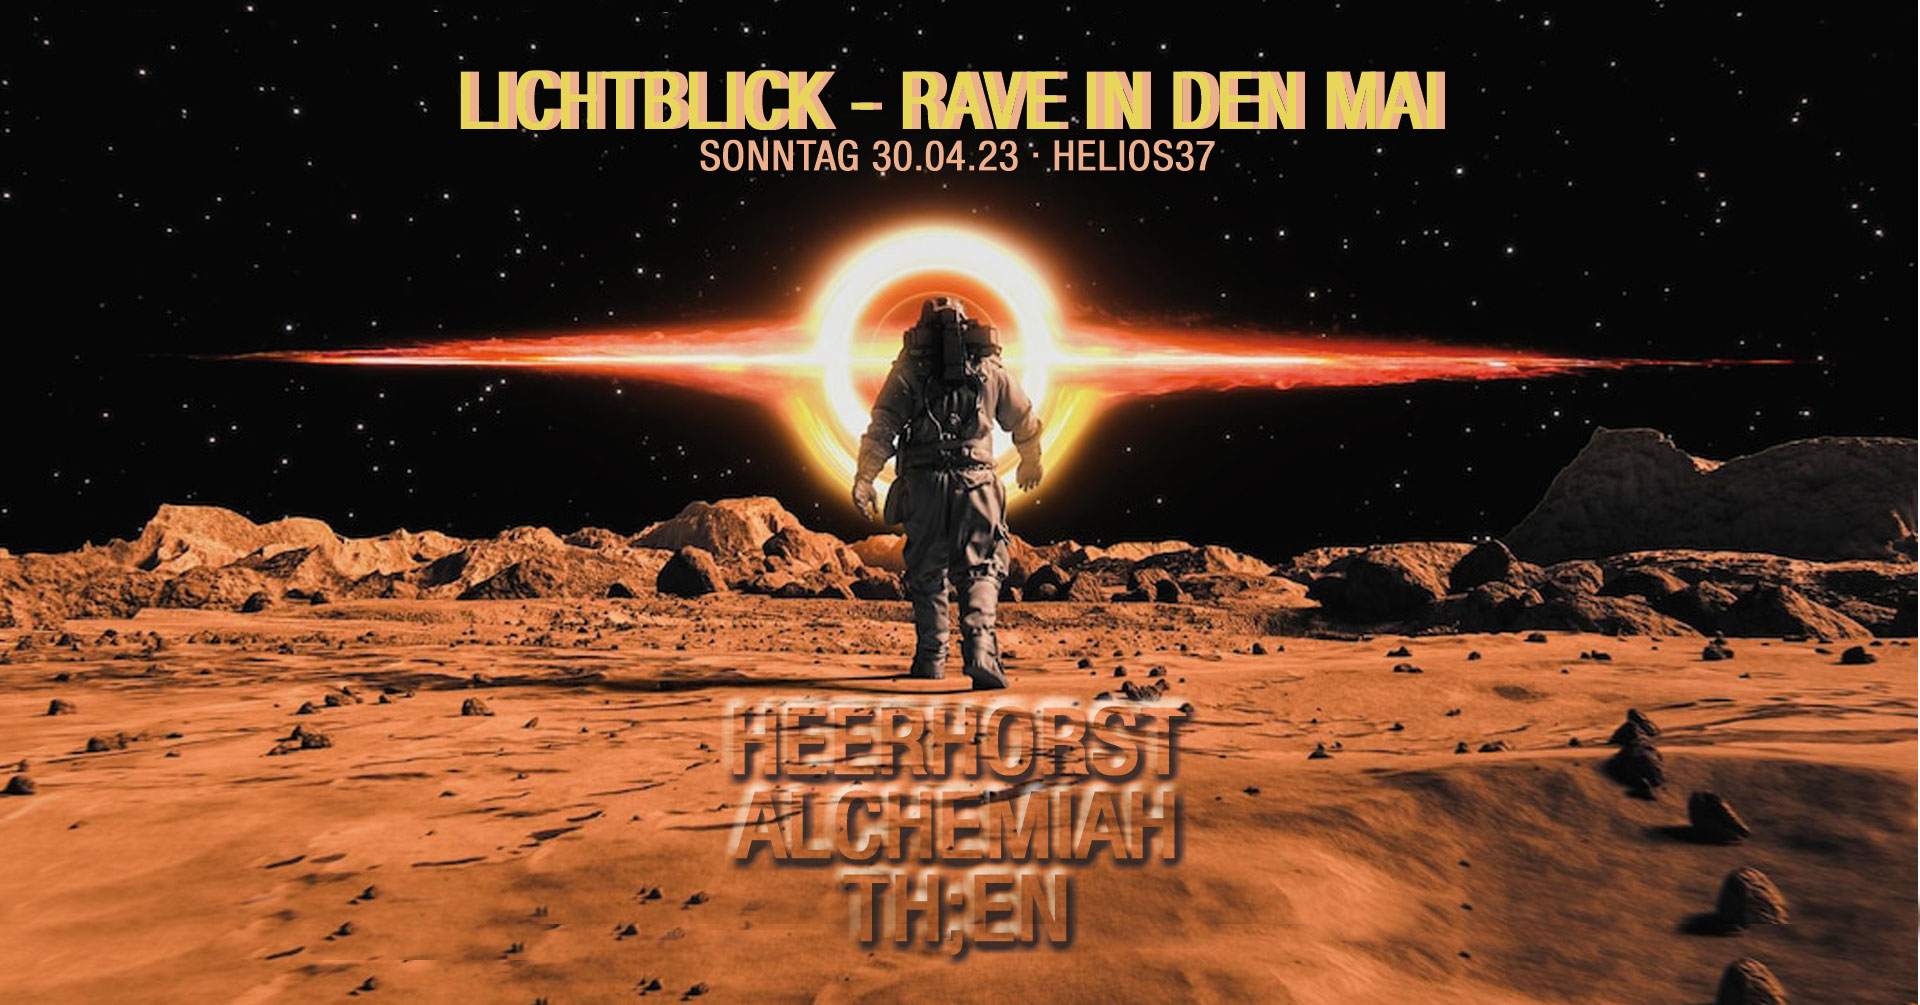 Lichtblick - Rave in den Mai - フライヤー表